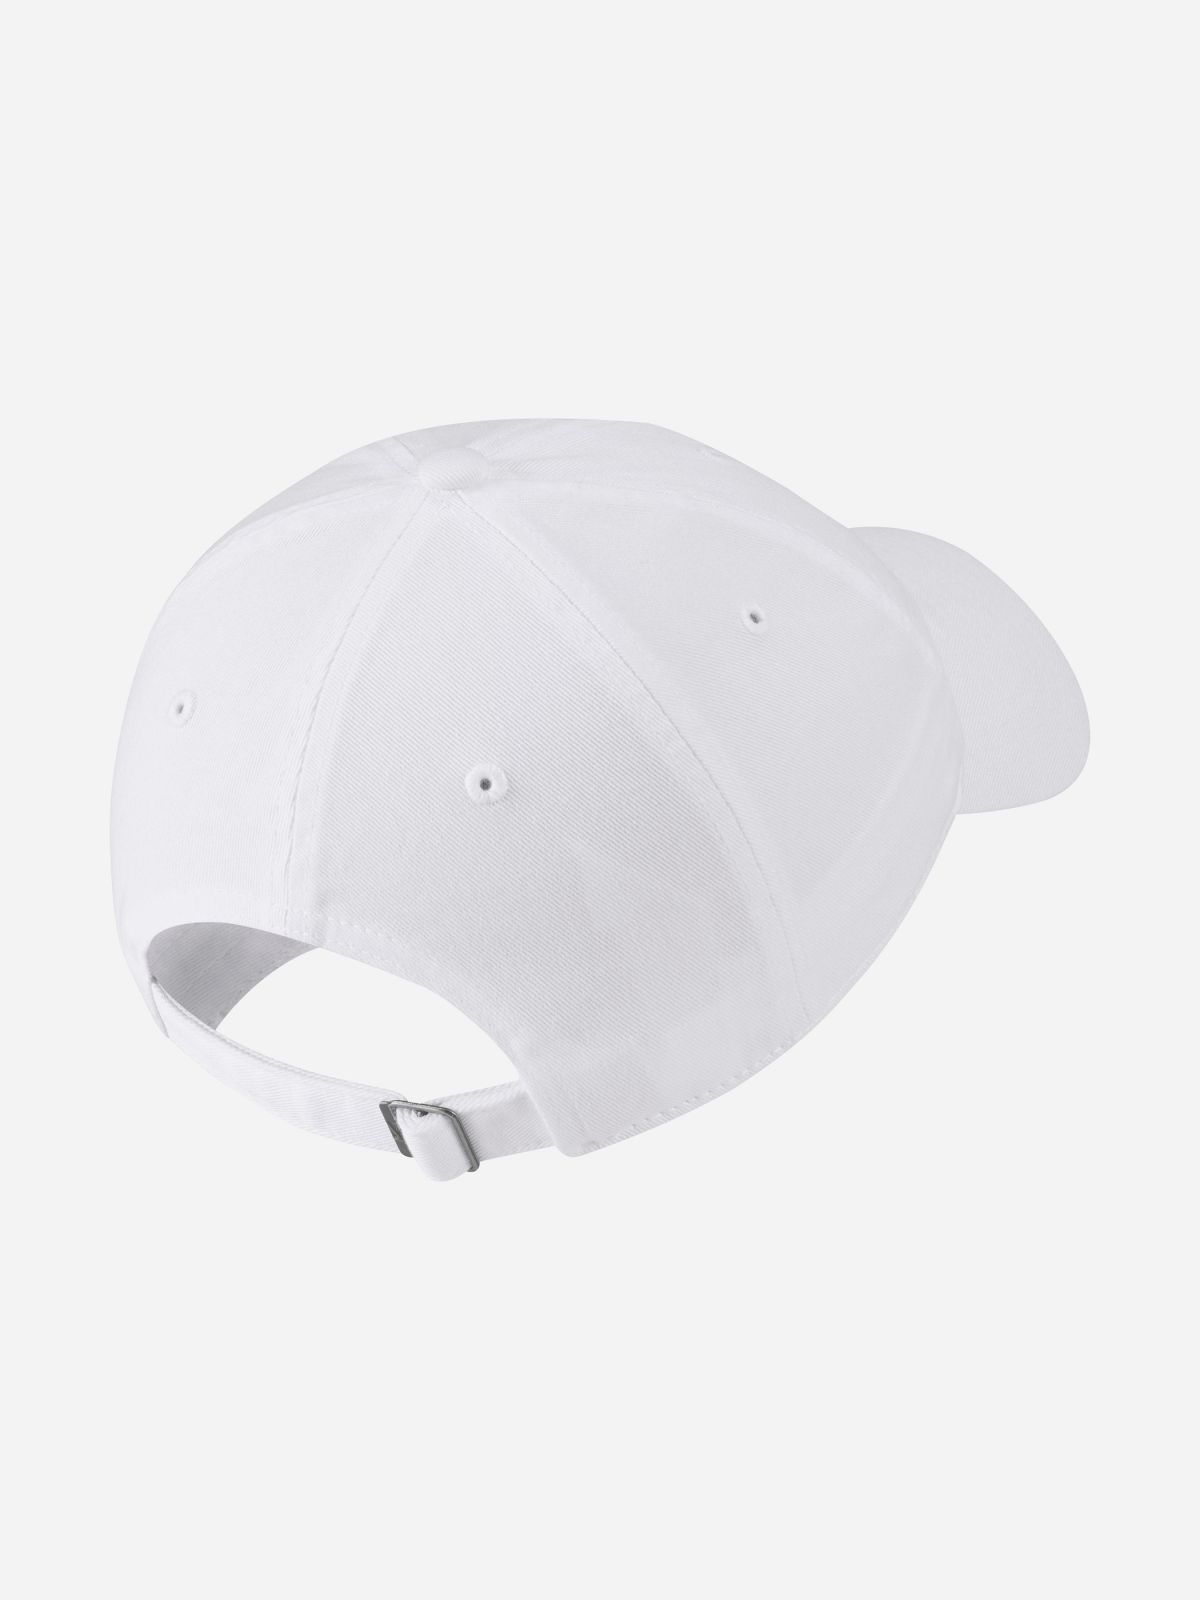  כובע מצחייה עם רקמת לוגו / נשים של NIKE